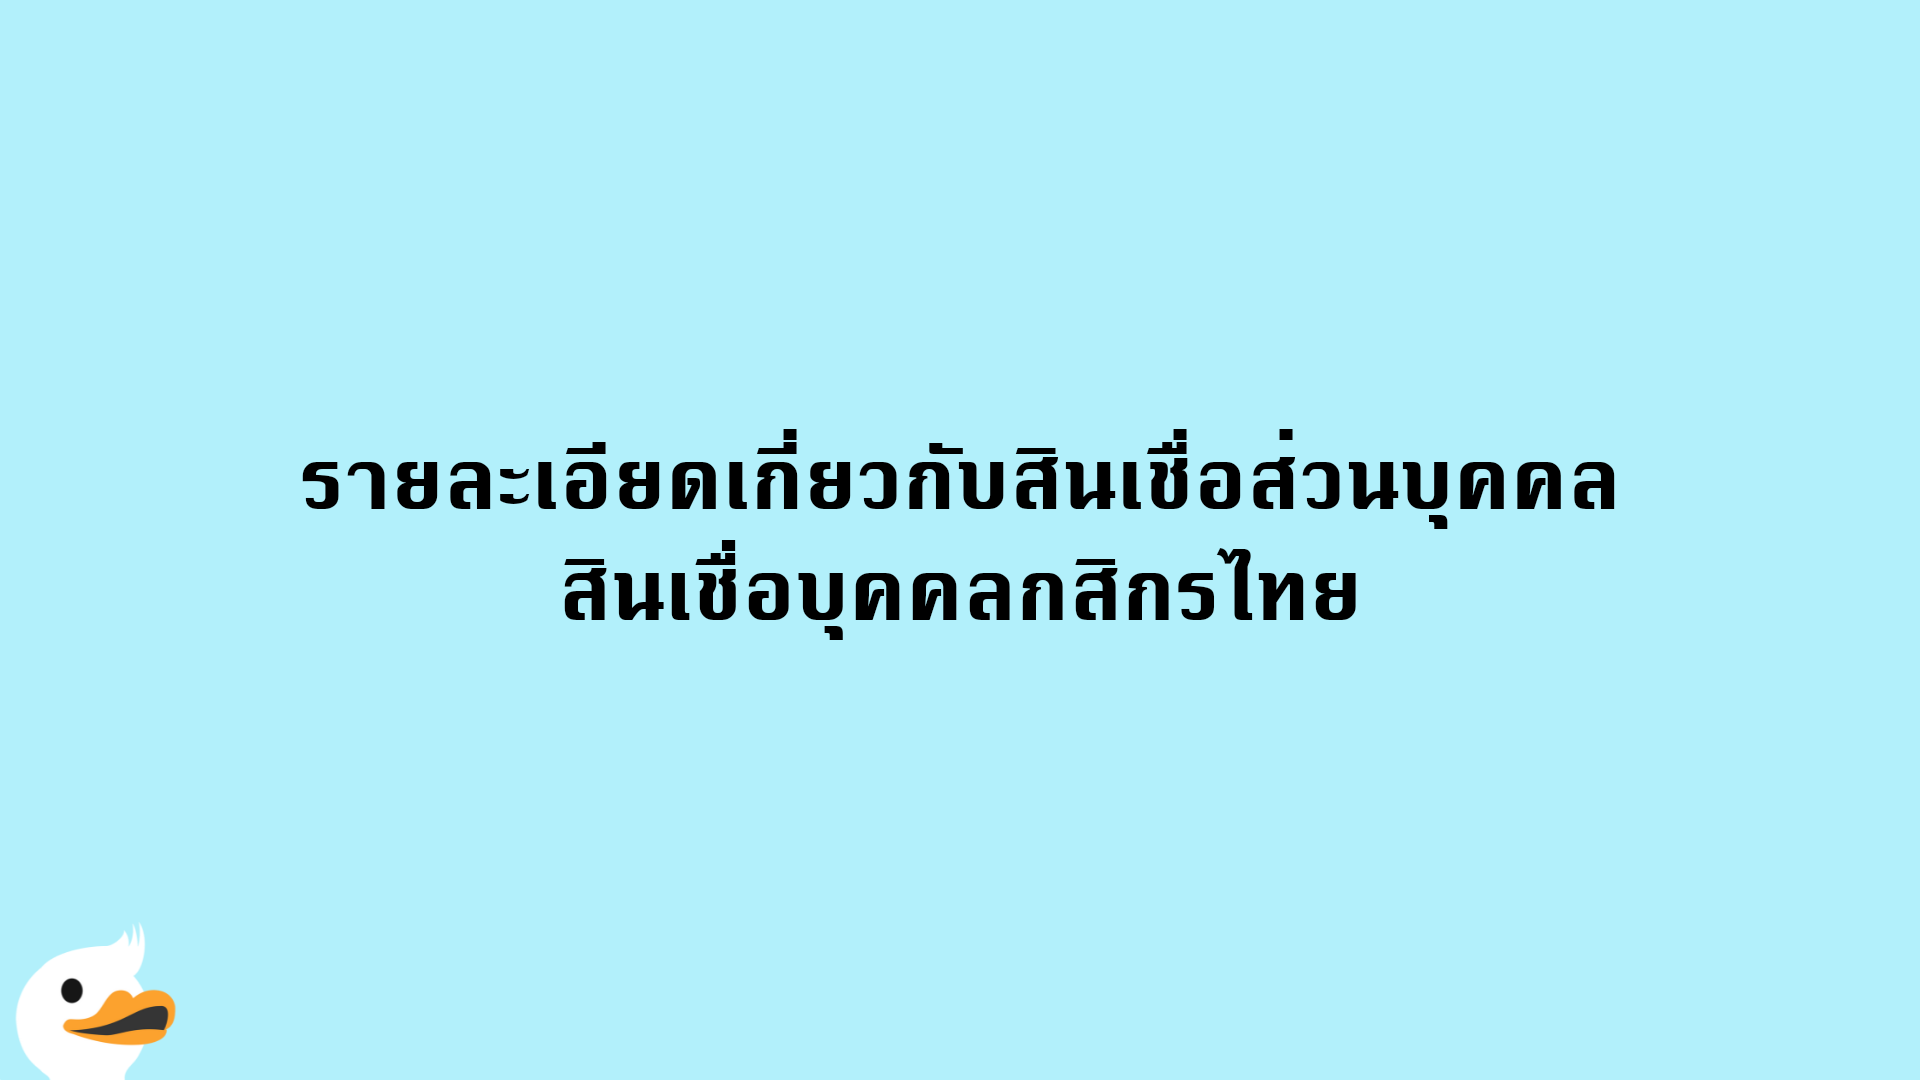 รายละเอียดเกี่ยวกับสินเชื่อส่วนบุคคล สินเชื่อบุคคลกสิกรไทย